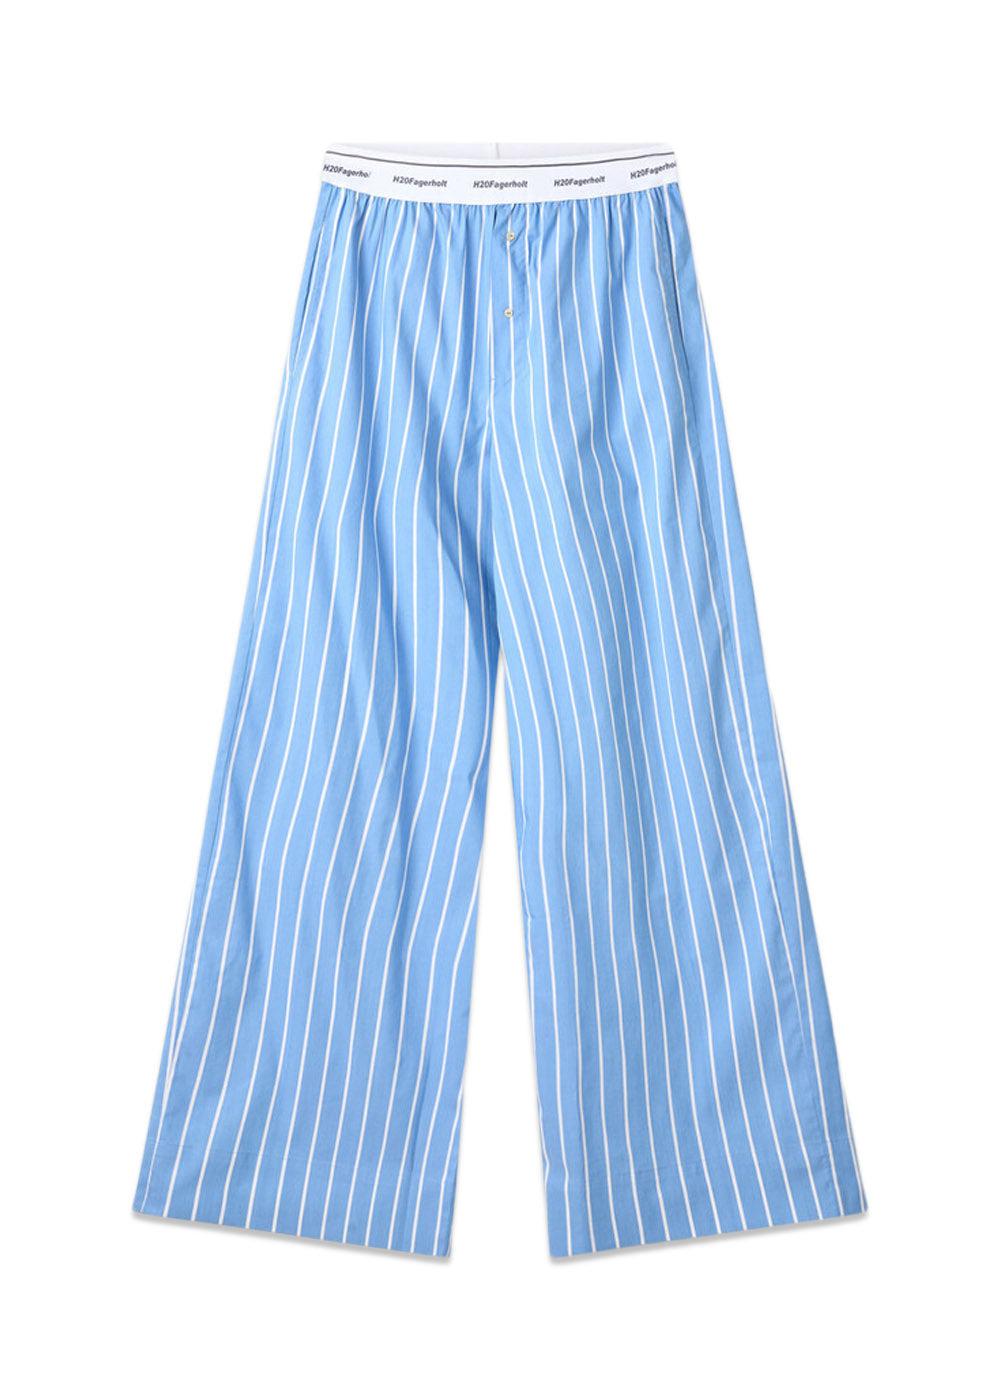 H2O Fagerholts Box Pants - Blue Stripe. Køb bukser her.